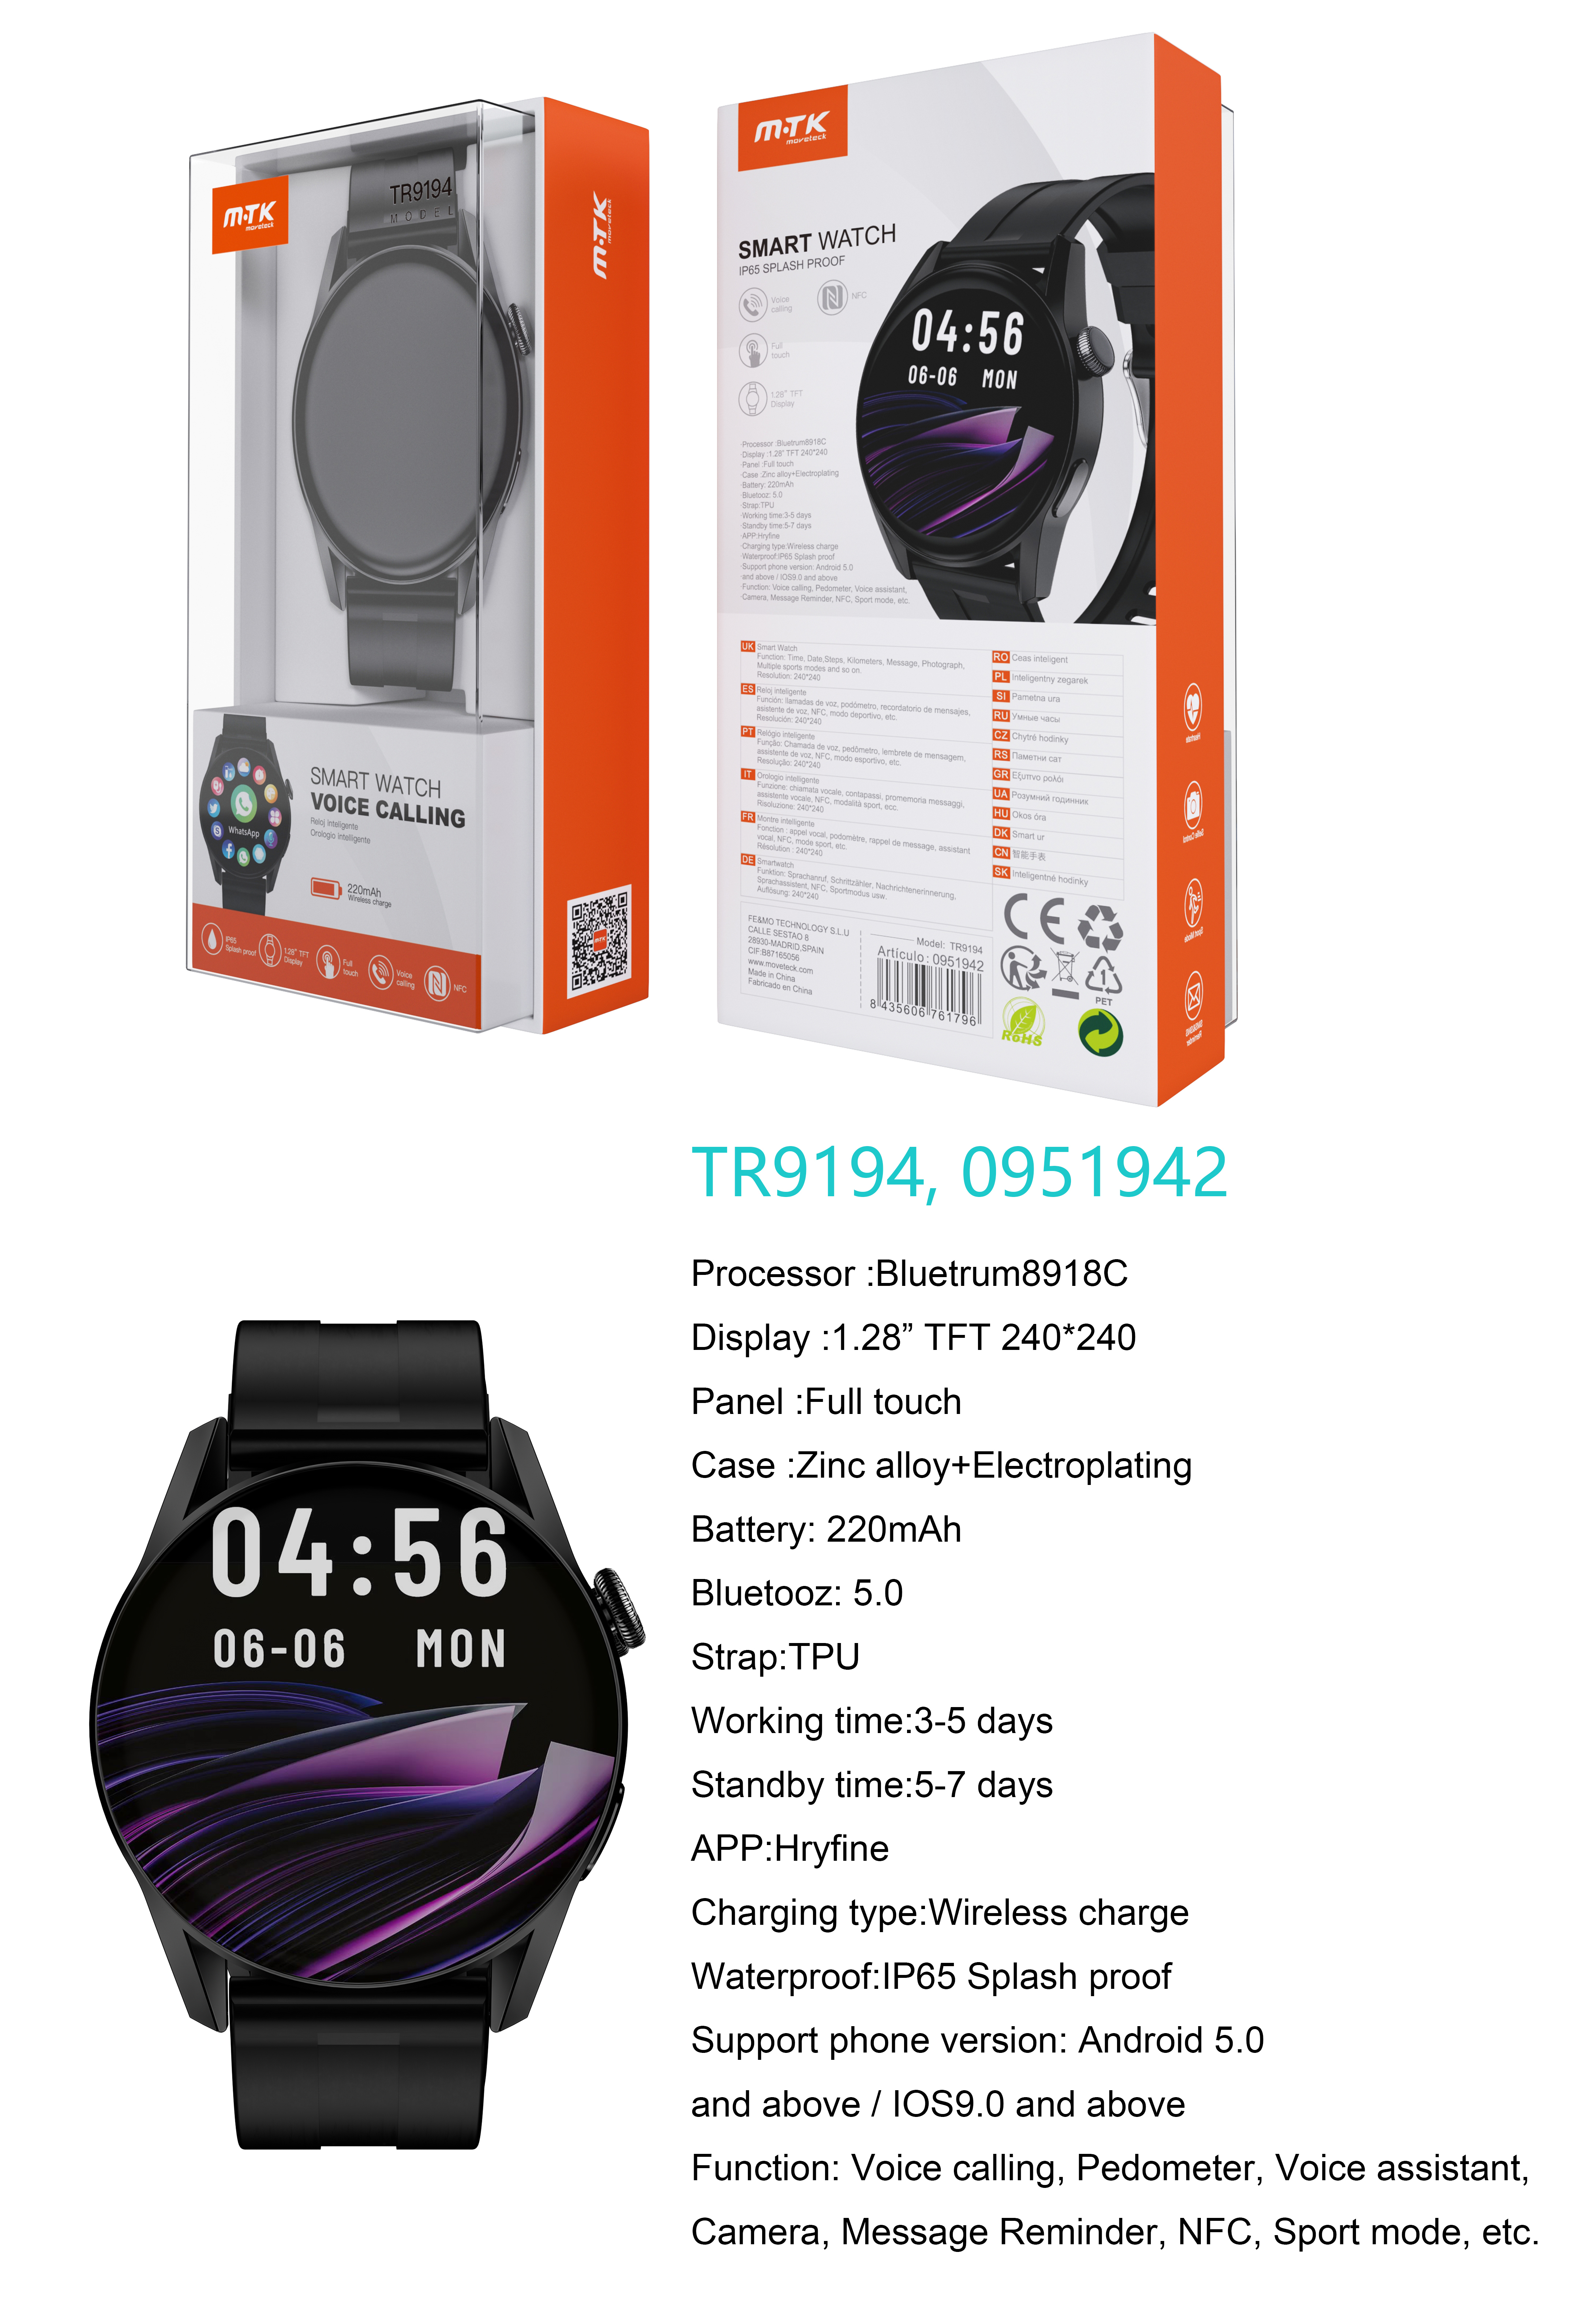 TR9194 NE Reloj Inteligente con bluetooth 5.0, Pantalla tactil de 1.28 pulgadas, Soporta NFC, llemadas, Asistente de Voz,Impermeable IP65, Bateria 220